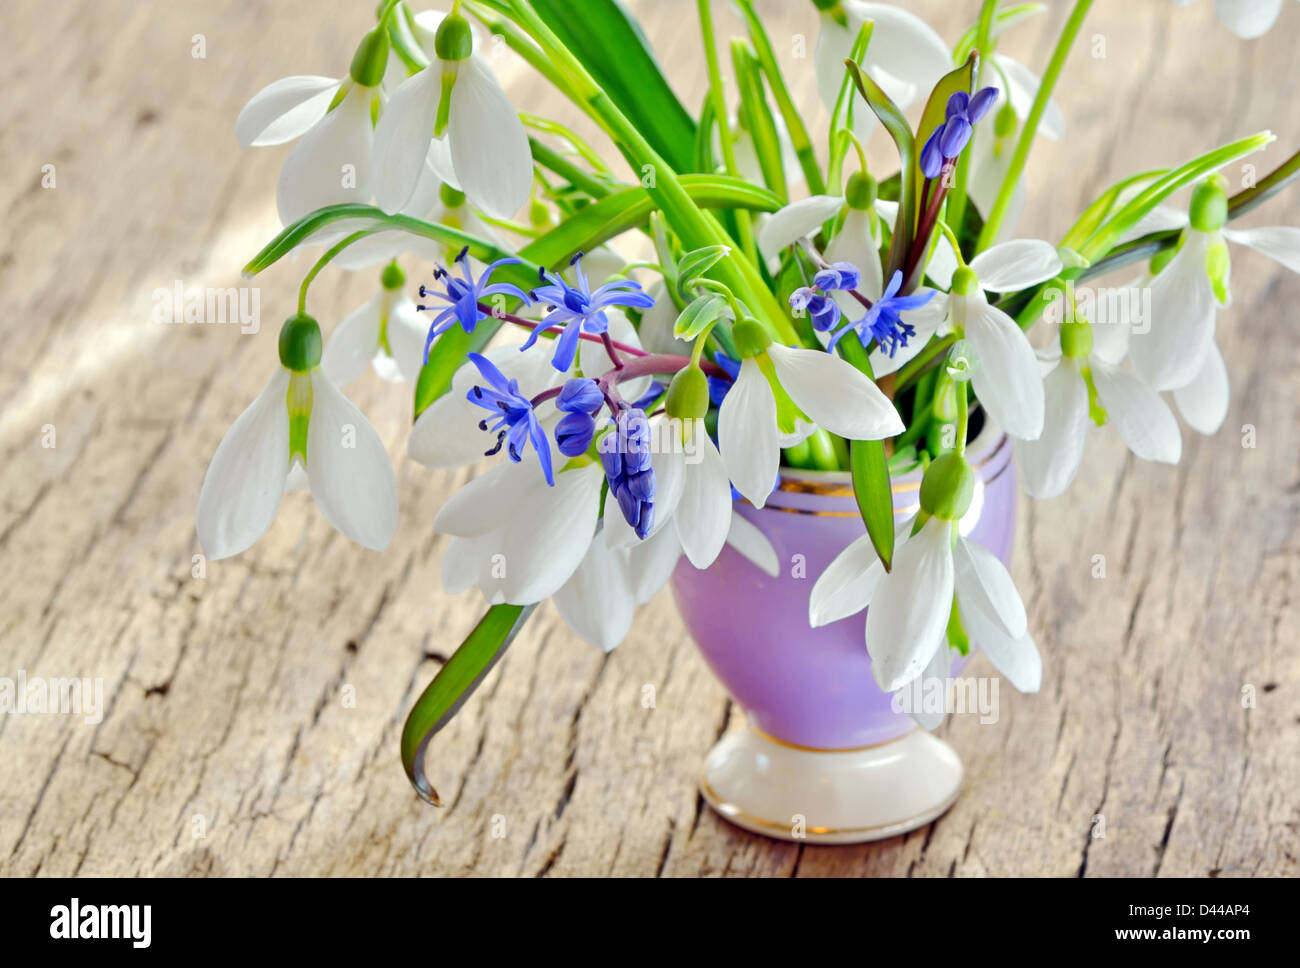 Schneeglöckchen schönen Blumenstrauß in einer Vase auf holzigen Hintergrund  Stockfotografie - Alamy